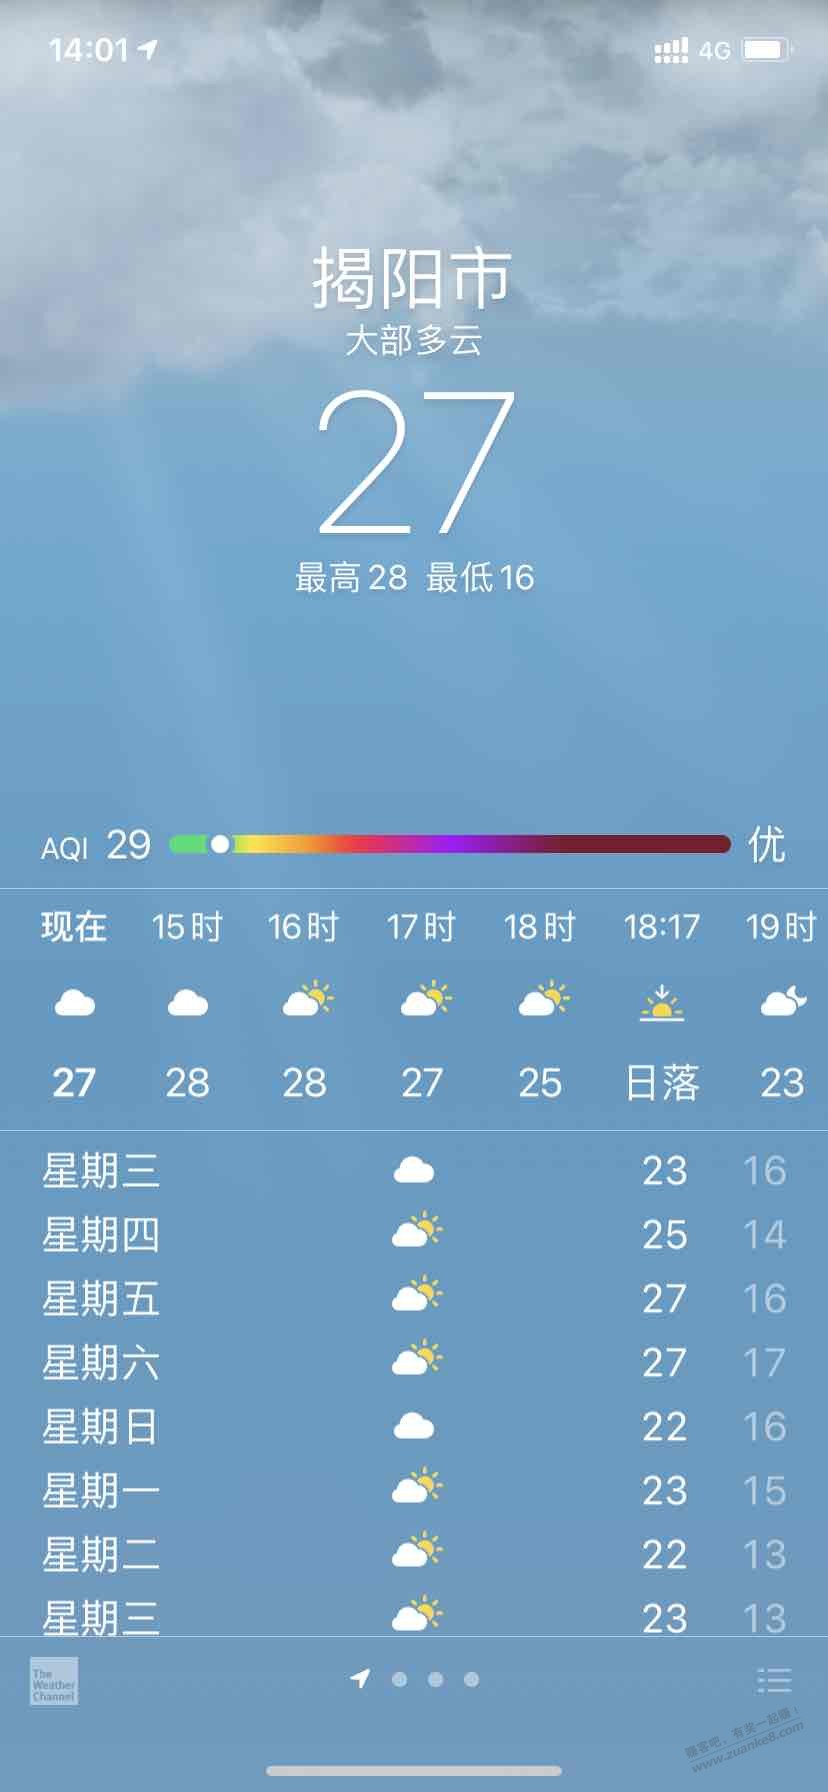 广东的温差属实大-上个星期羽绒服-这个星期短袖